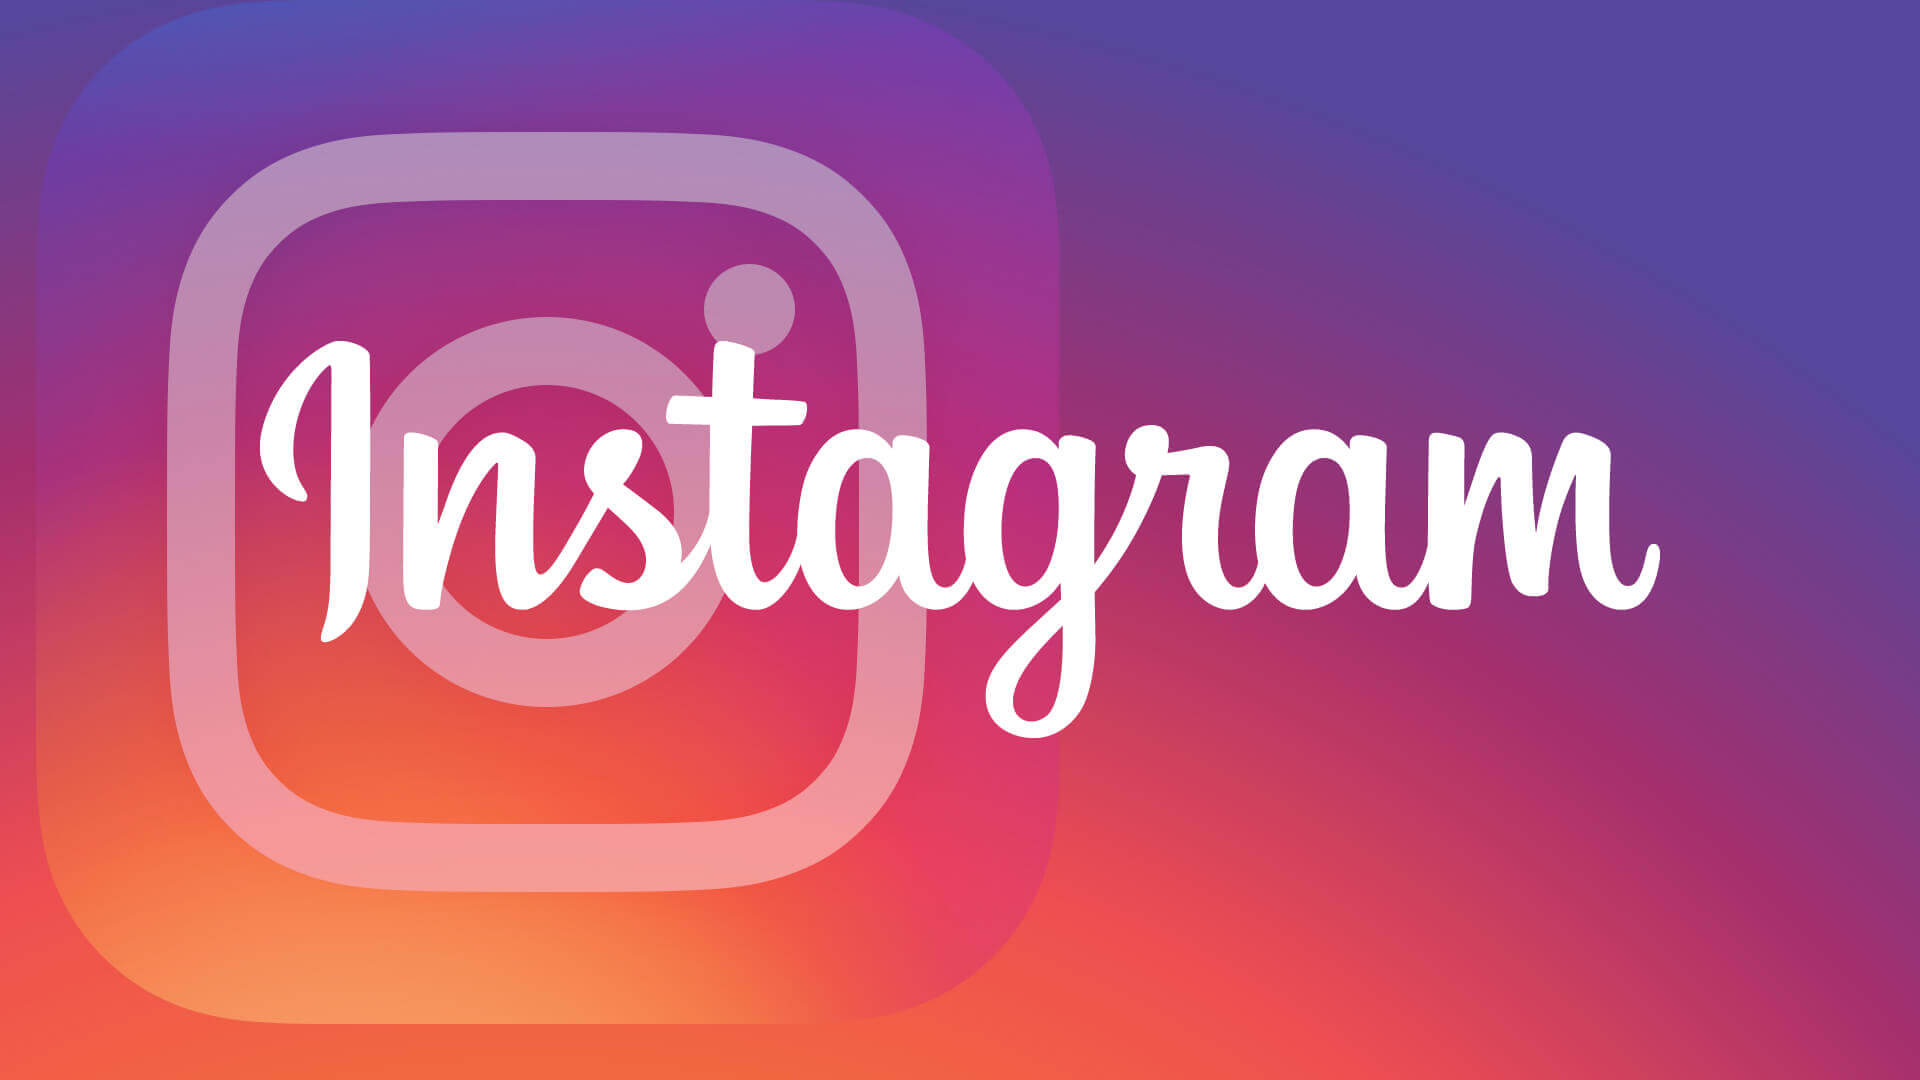 Instagram là gì? Làm thế nào để bán hàng trên Instagram hiệu quả? – Eggflow  Marketing Automation